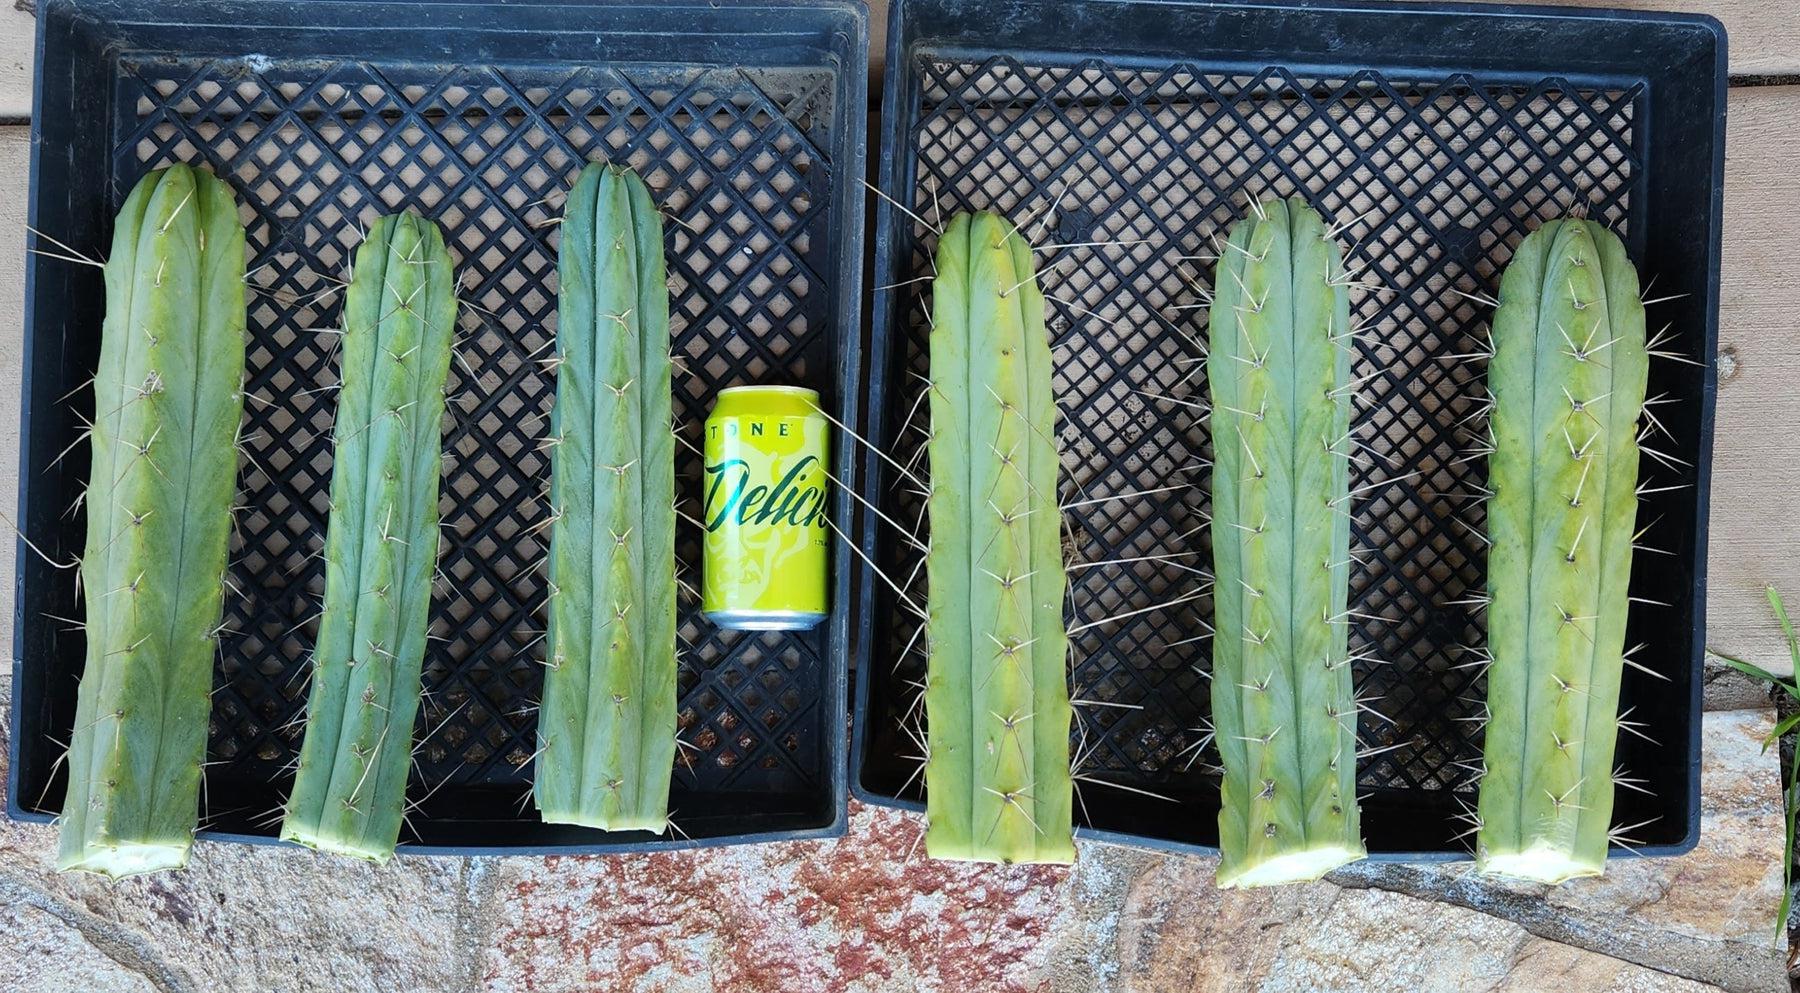 #EC26 EXACT Trichocereus Bridgesii Jiimz Cactus CUTTINGS various sizes-Cactus - Large - Exact-The Succulent Source